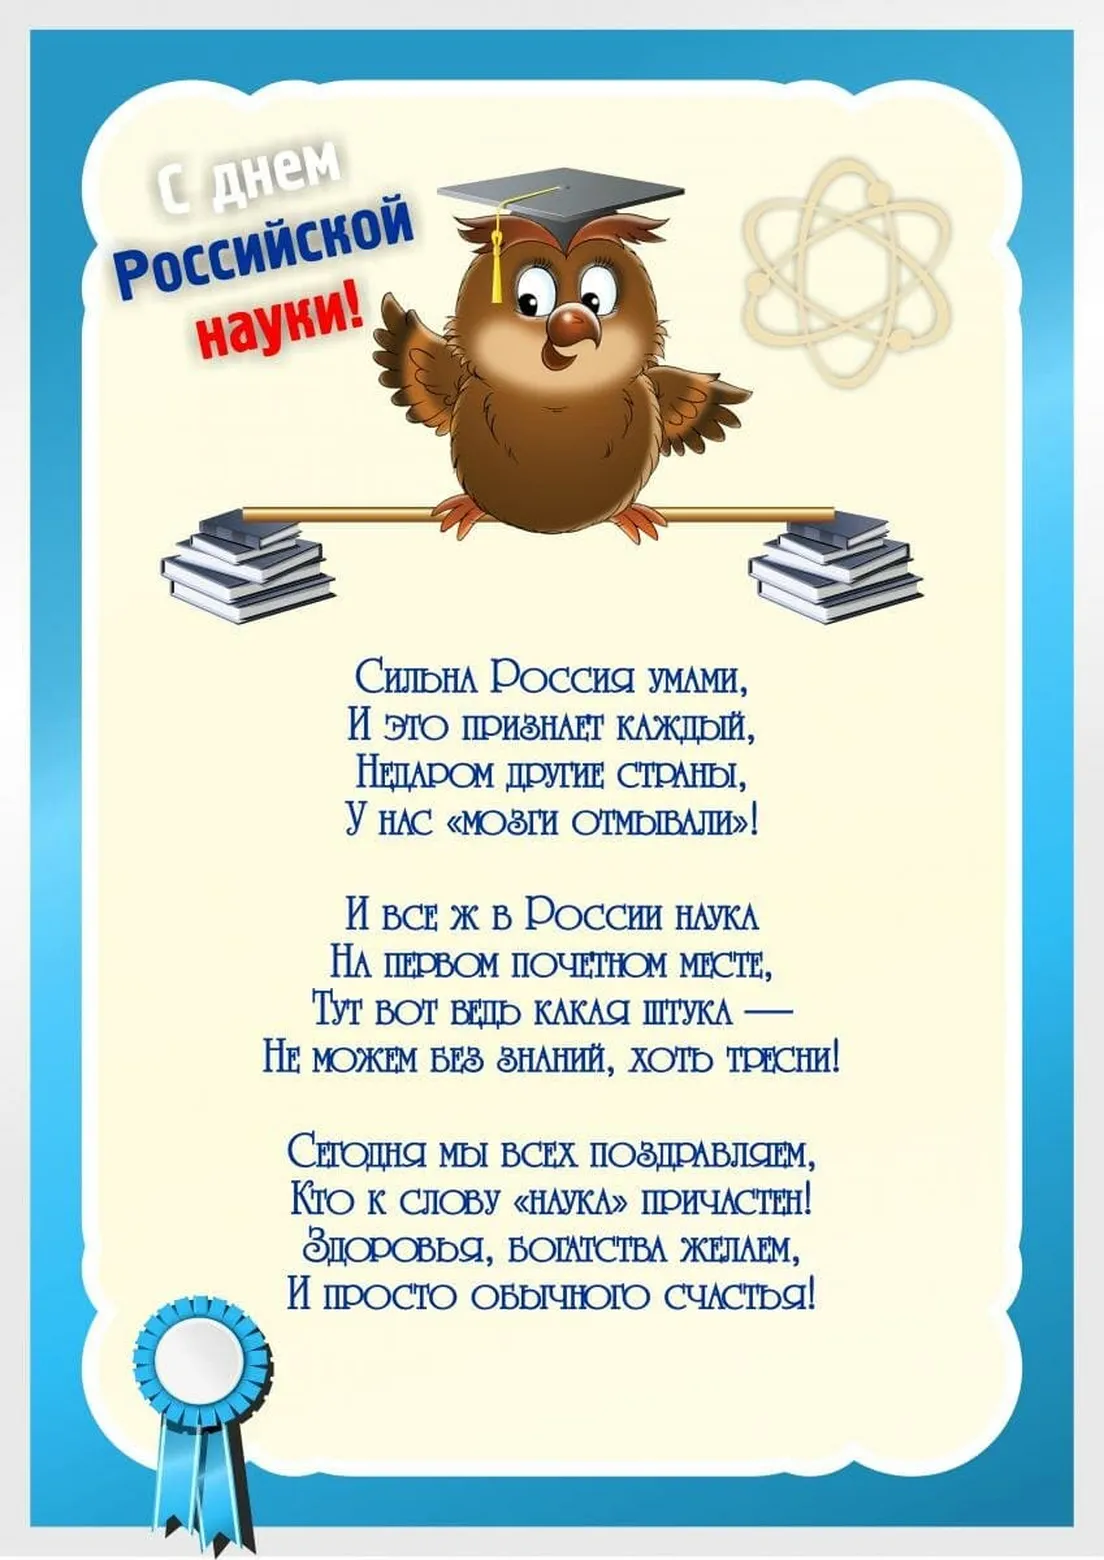 Поздравительная открытка с днем Российской науки